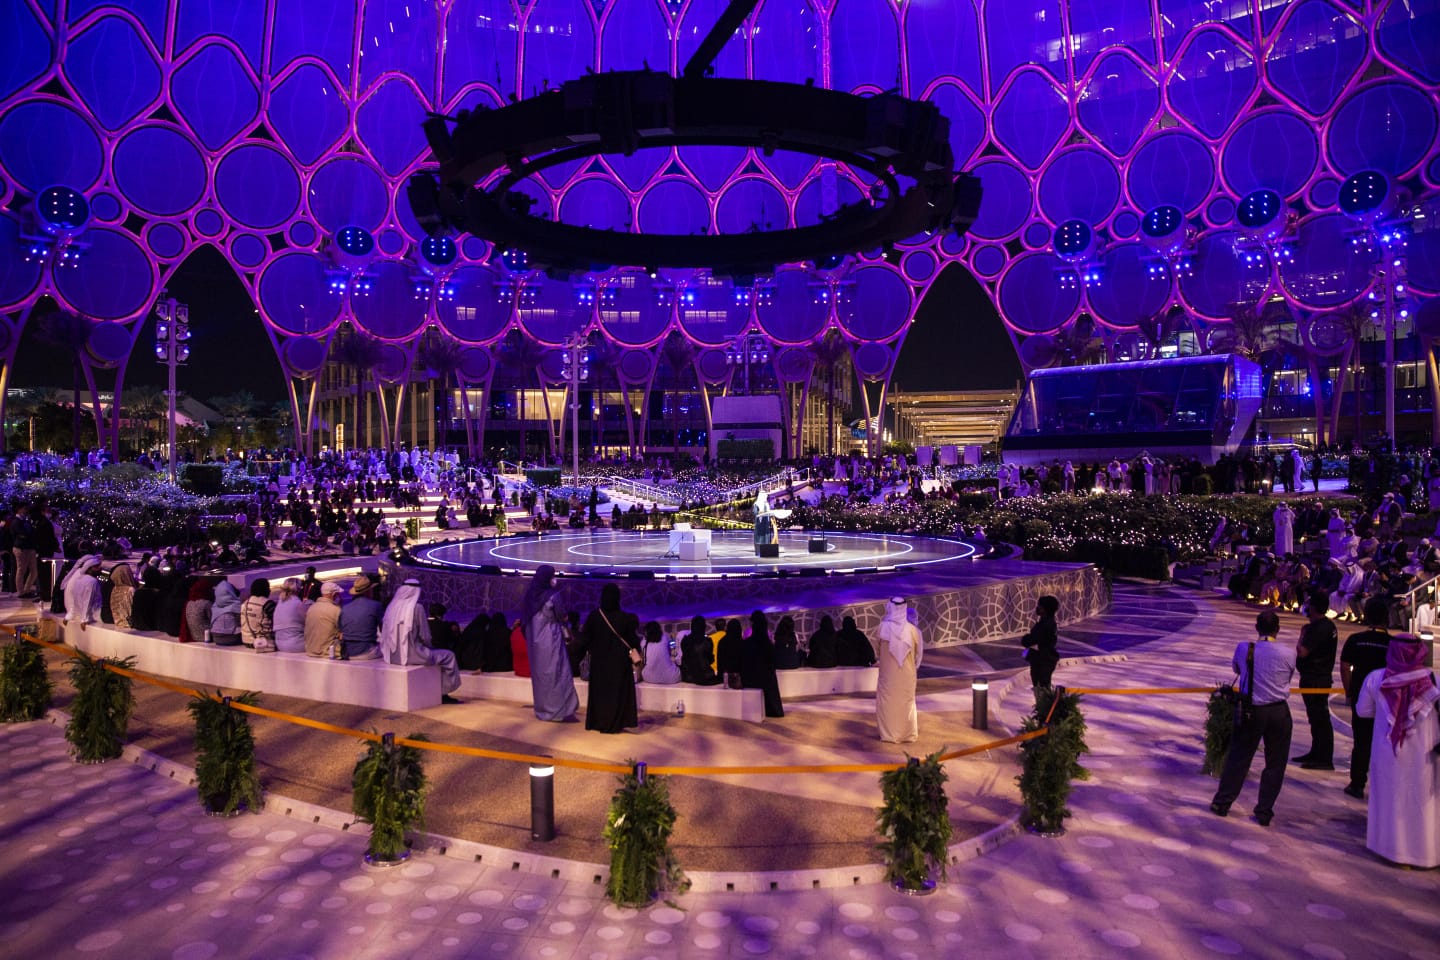 إكسبو دبي يحتضن الأديان لأول مرة في تاريخ المعرض الدولي العريق